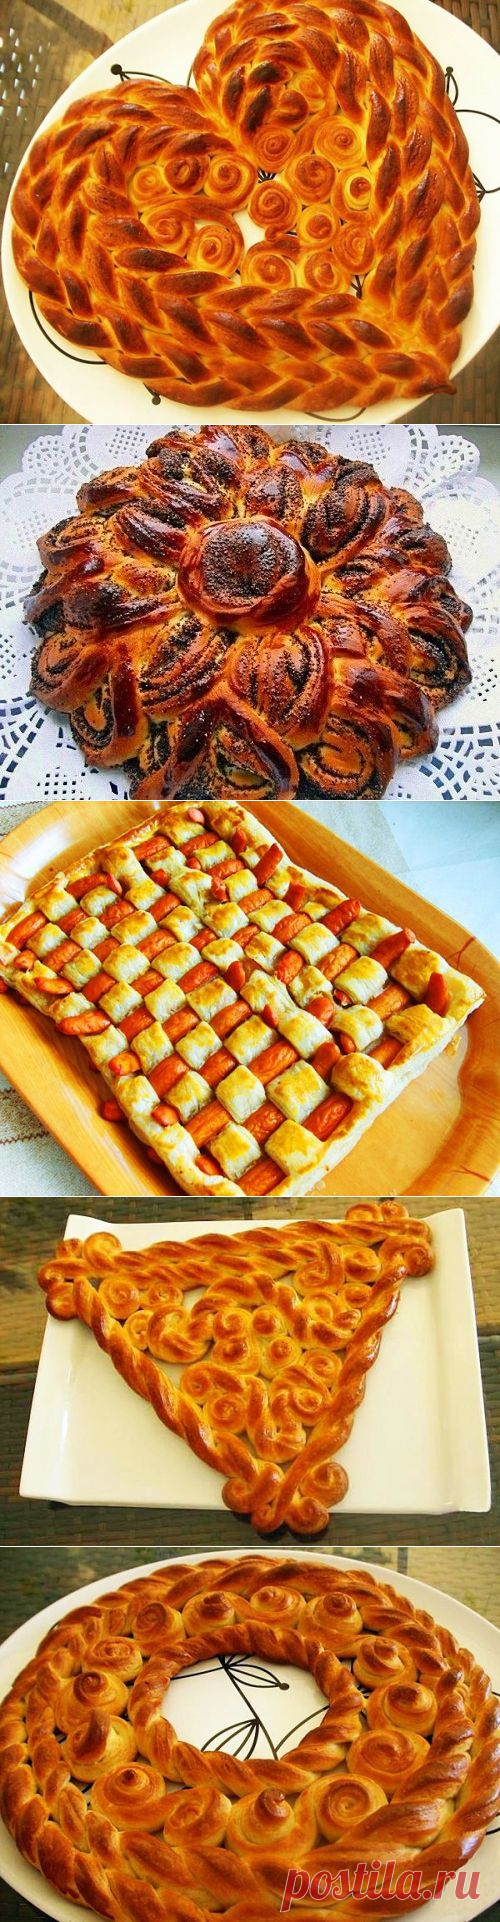 Как красиво разделать тесто: пироги, пирожки, булочки и плетёнки | Полезные советы